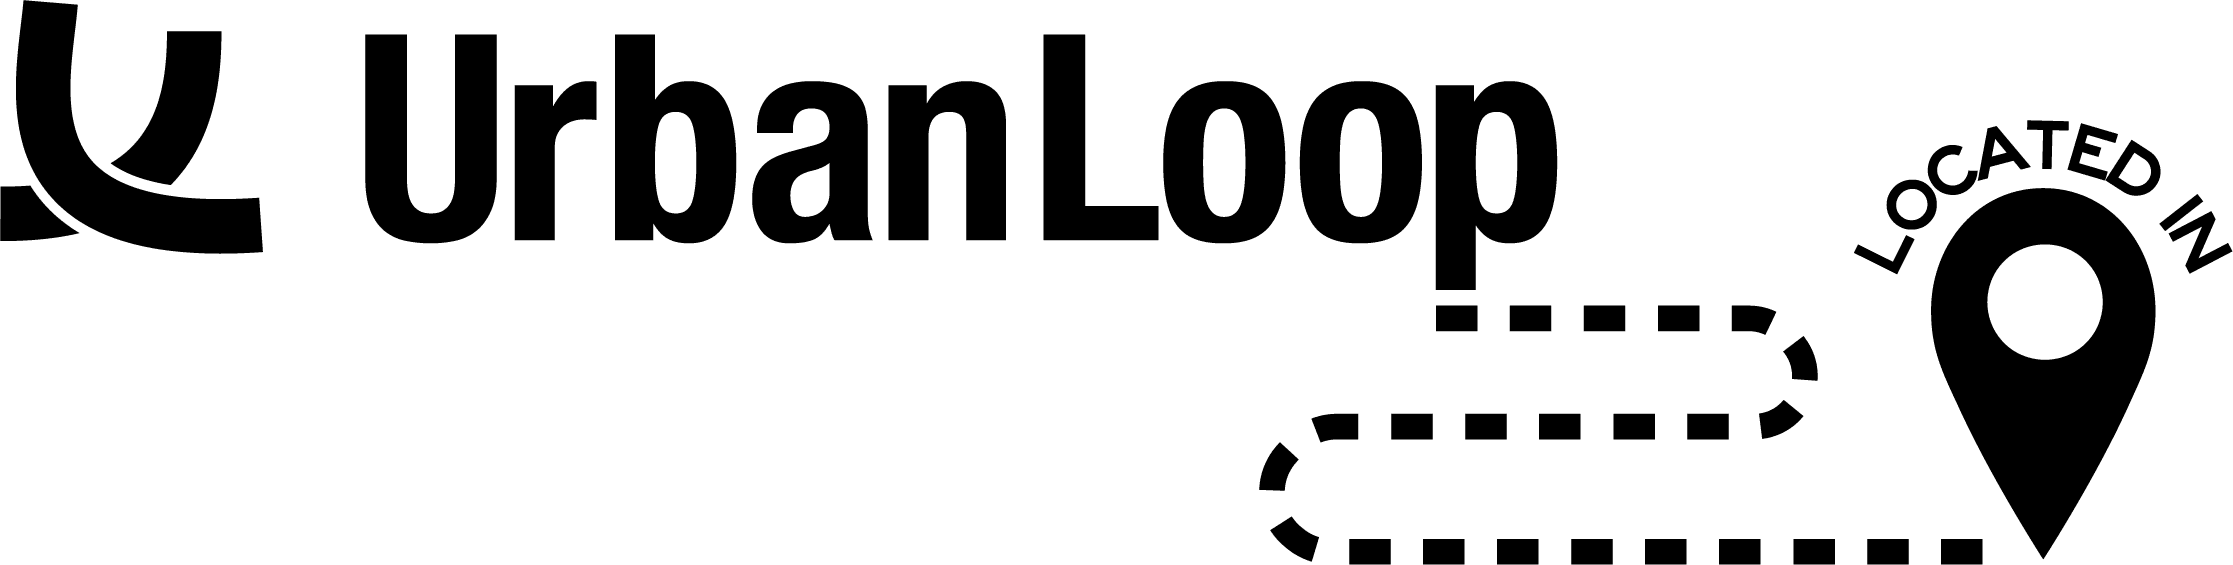 Urbandale Logo - Urban Loop | Urbandale, IA - Official Website